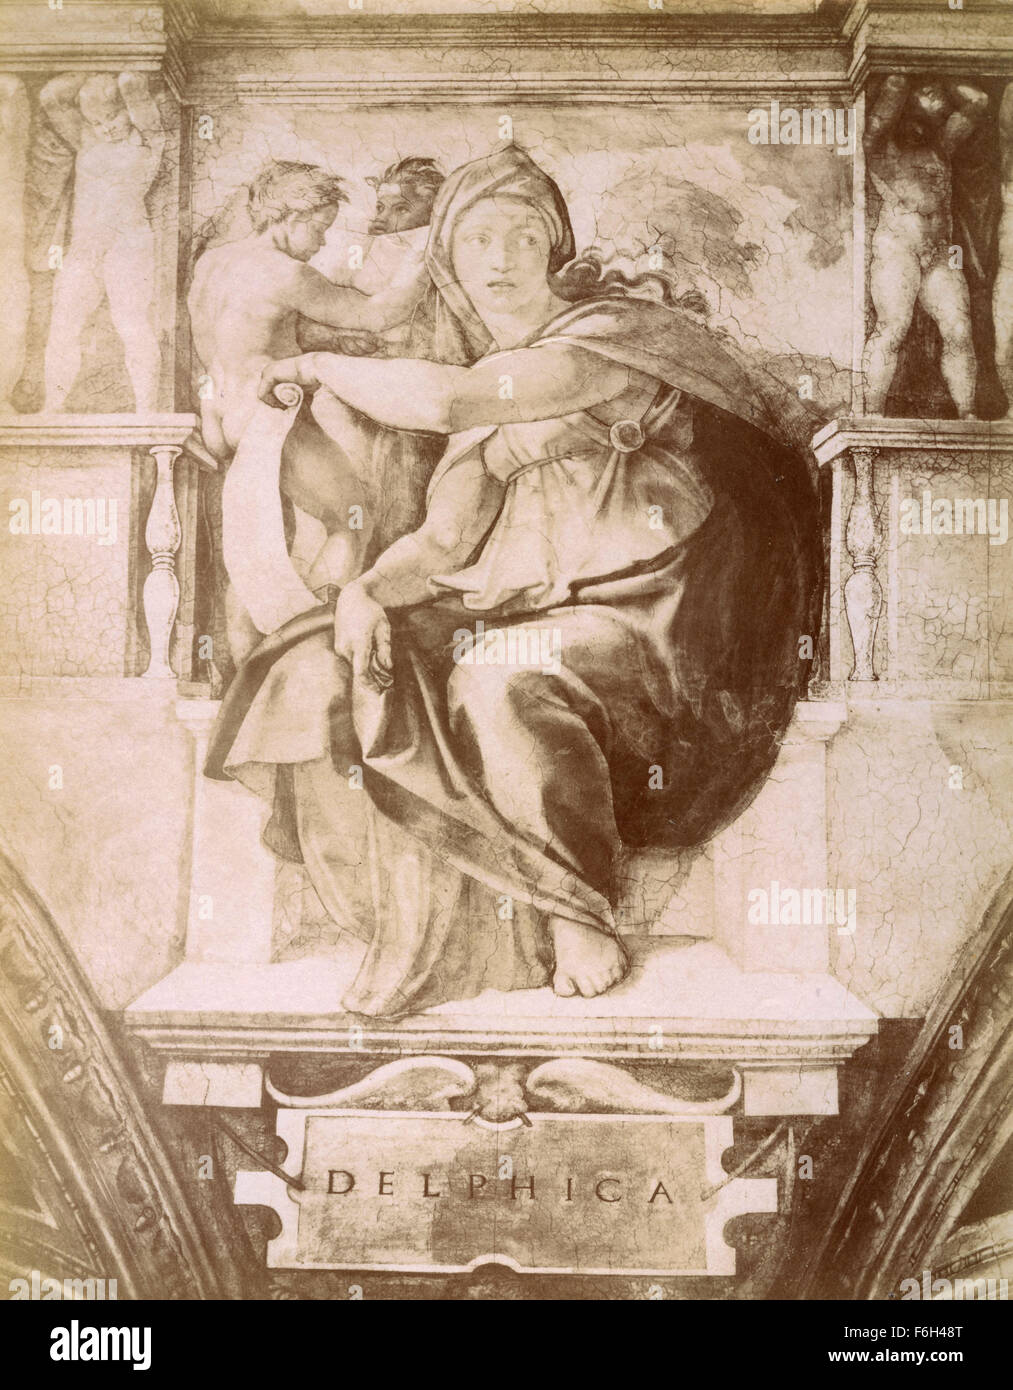 Delphische Sibylle, Michelangelo Zeichnung Stockfoto